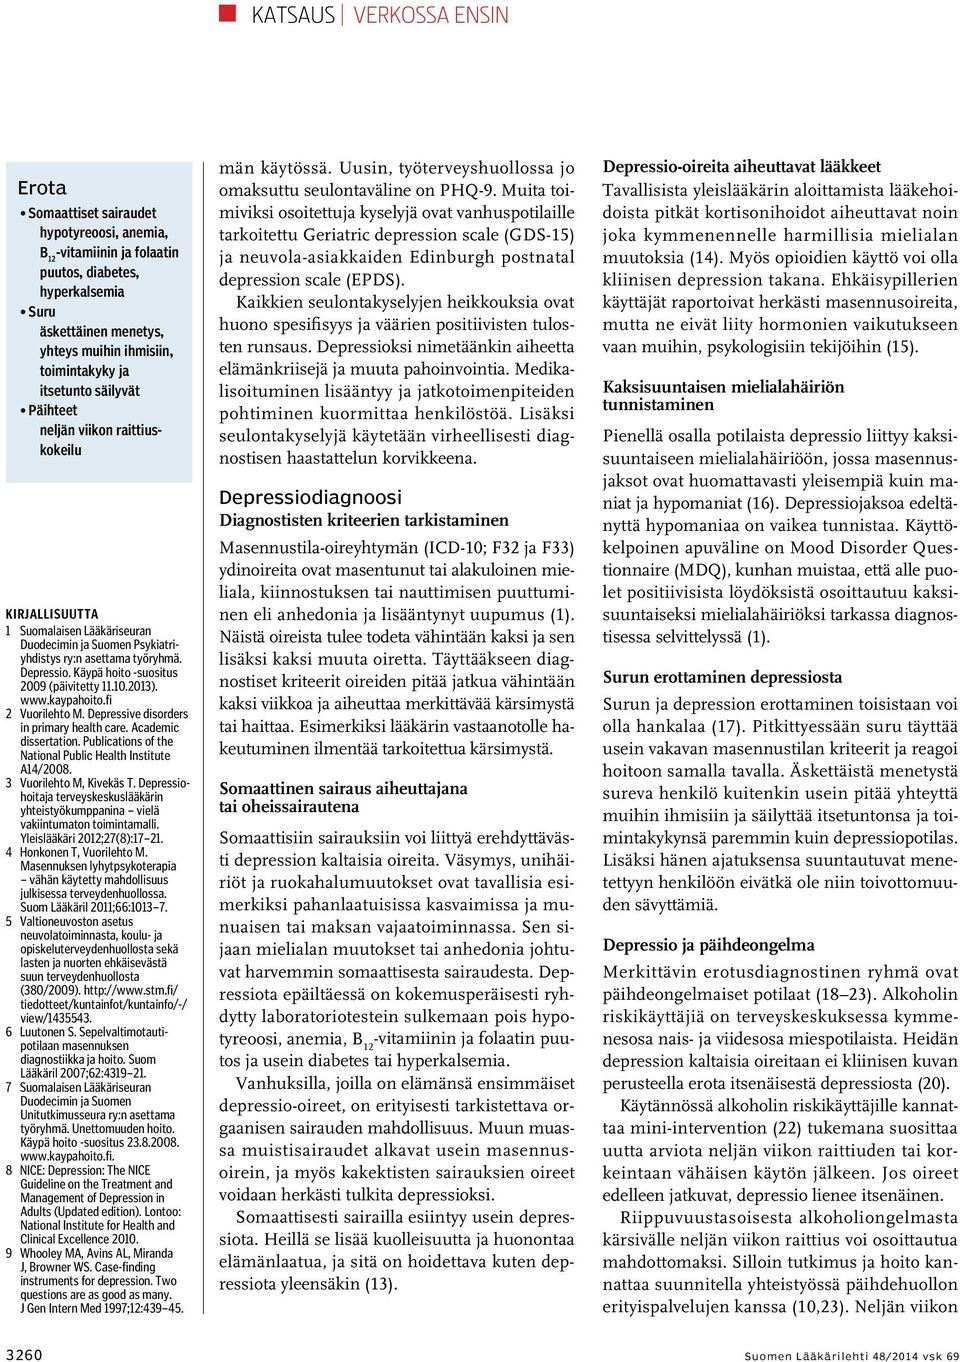 Käypä hoito -suositus 2009 (päivitetty 11.10.2013). www.kaypahoito.fi 2 Vuorilehto M. Depressive disorders in primary health care. Academic dissertation.